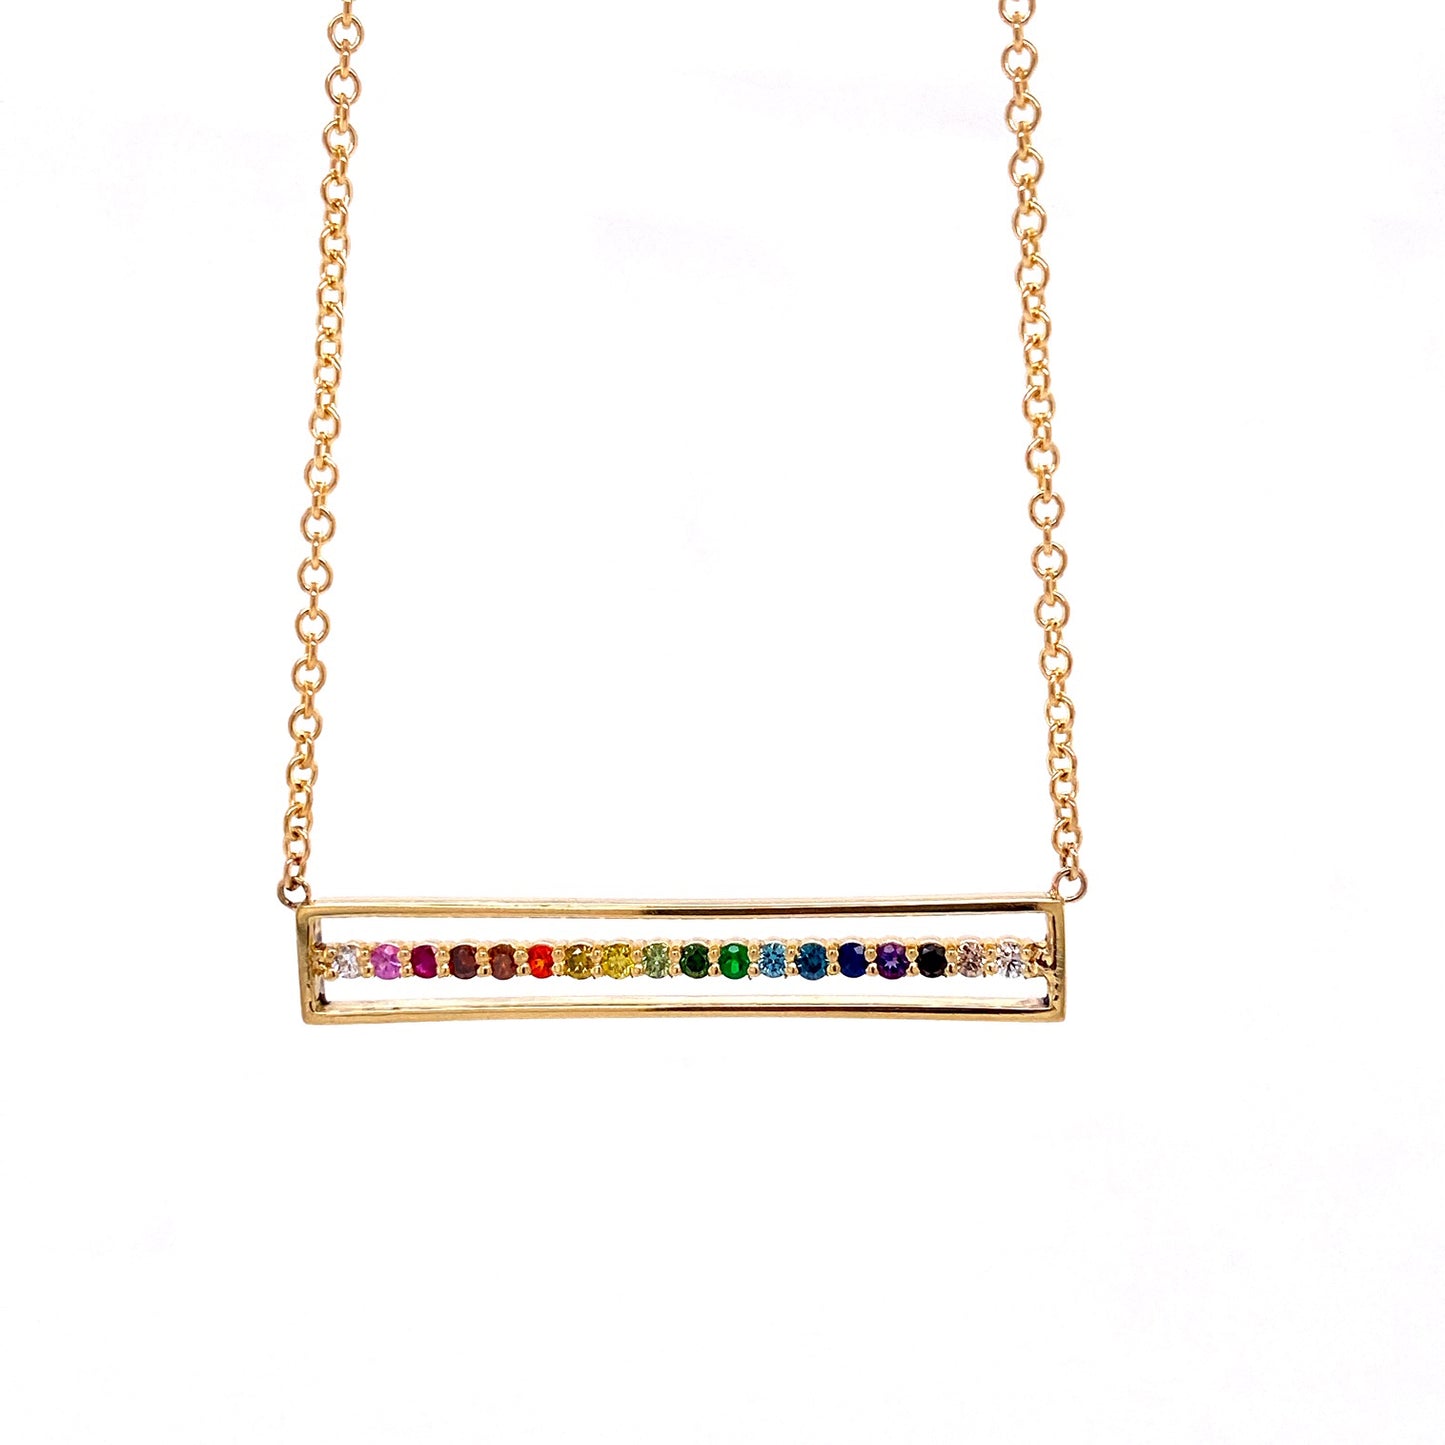 18k Rose Gold "Equality" Bar Necklace